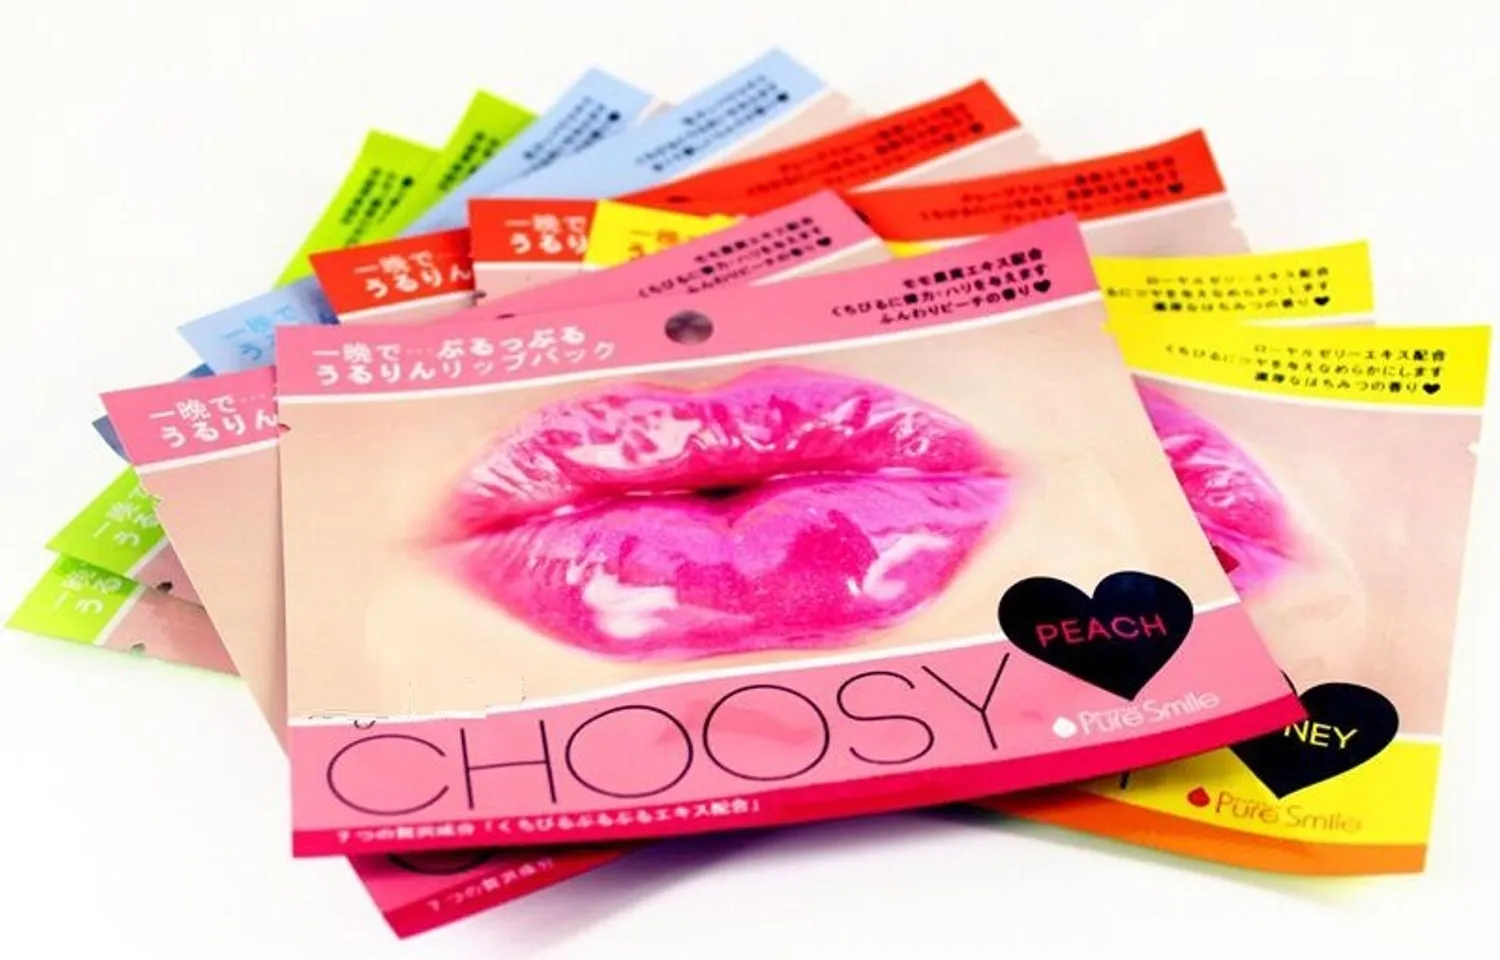 Sử dụng mặt nạ môi Choosy Nhật Bản sẽ giúp dưỡng ẩm, làm mềm mịn môi và giải quyết nỗi lo môi thâm